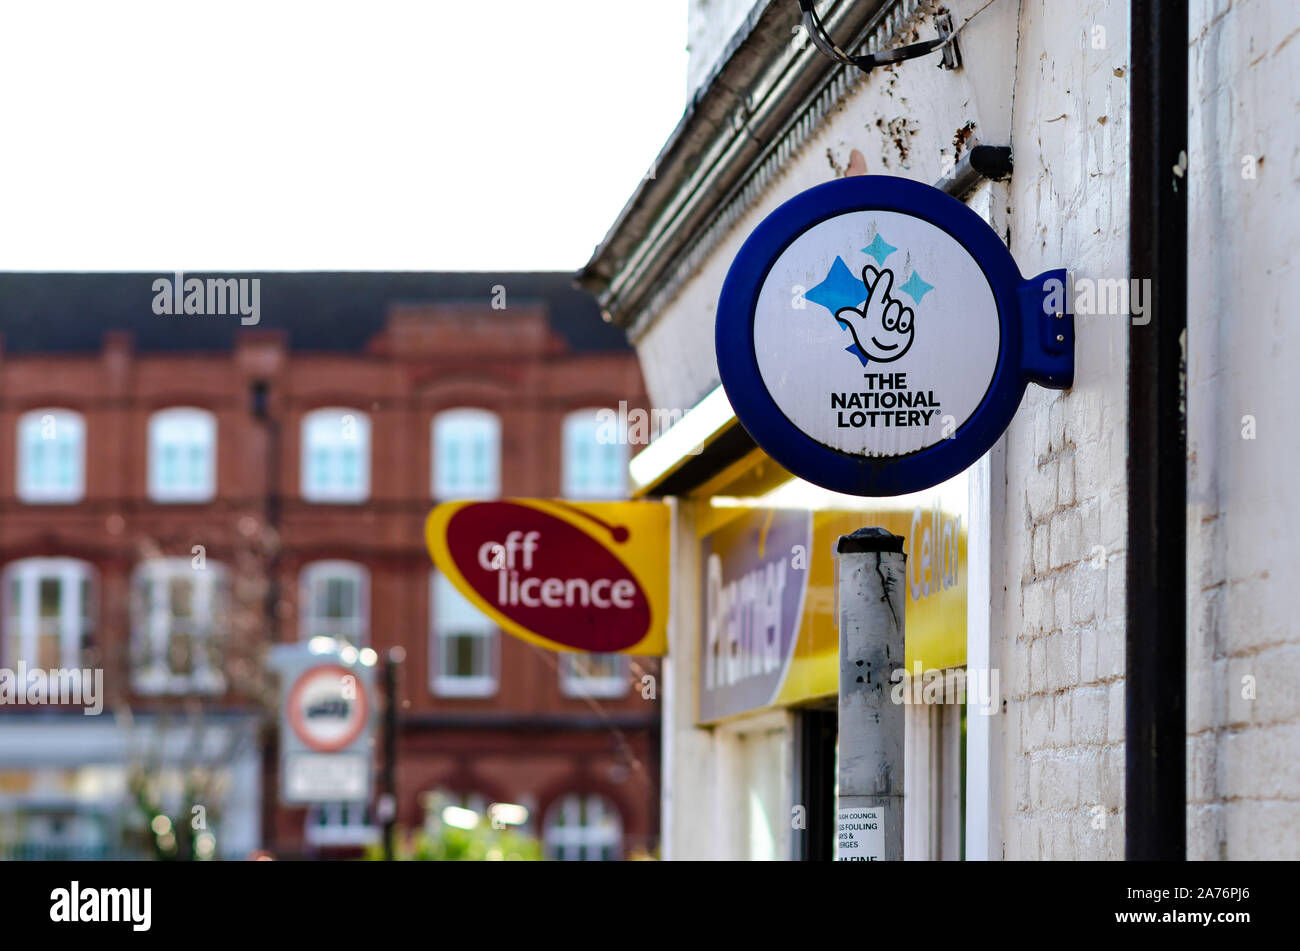 Die nationalen Lotterie- und Off-Licence-Werbeflächen, die auf dem Ladengebäude in Stone, Staffordshire, Großbritannien zu sehen sind. Stockfoto